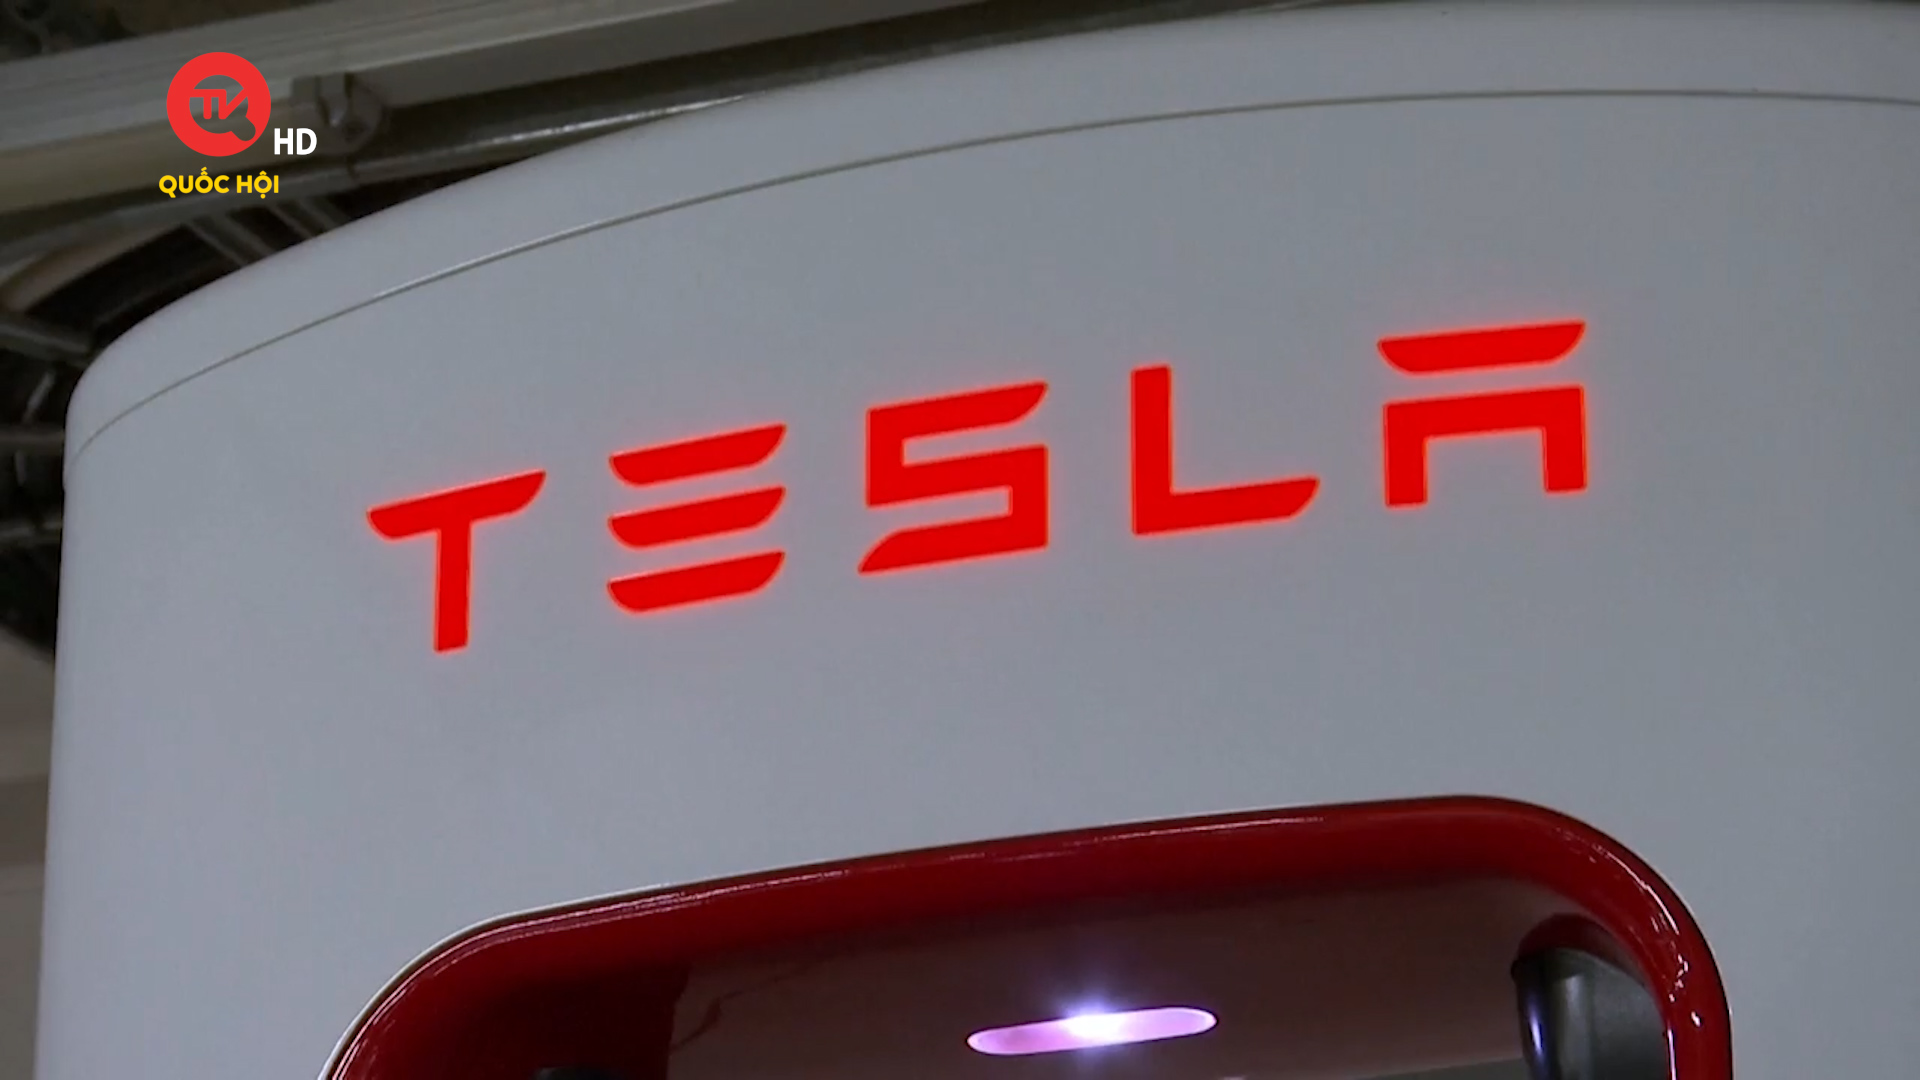 Hàn Quốc phạt Tesla 2,2 triệu USD vì quảng cáo sai về thời lượng pin